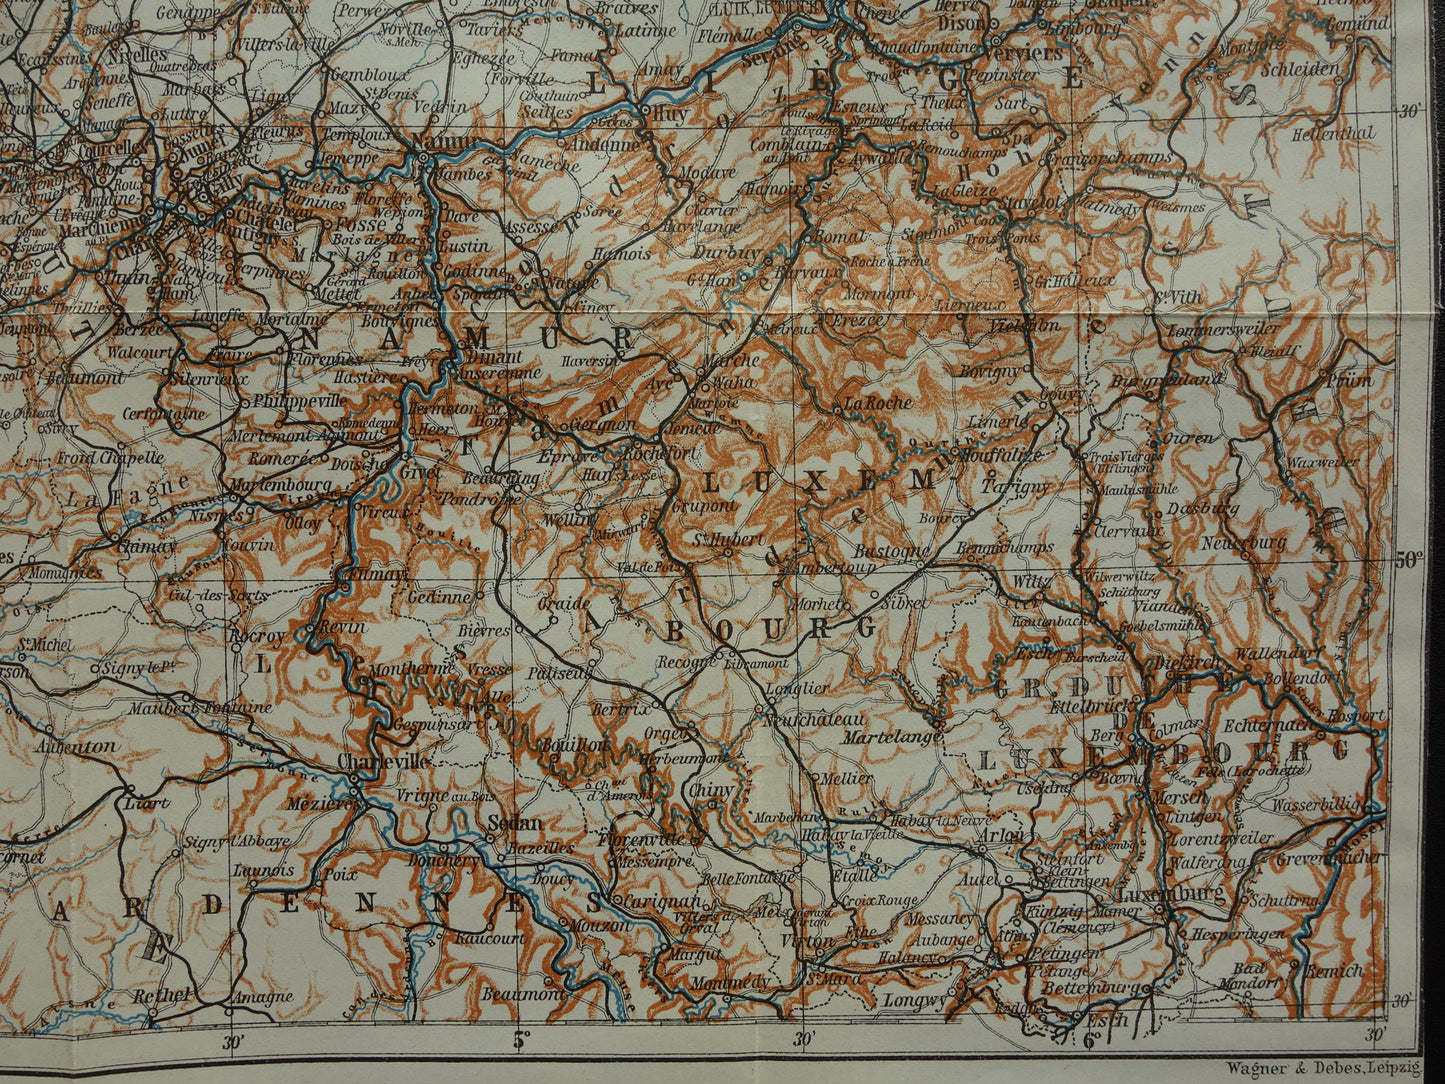 BELGIE historische kaart van België uit 1904 kleine originele oude antieke landkaart van België vintage